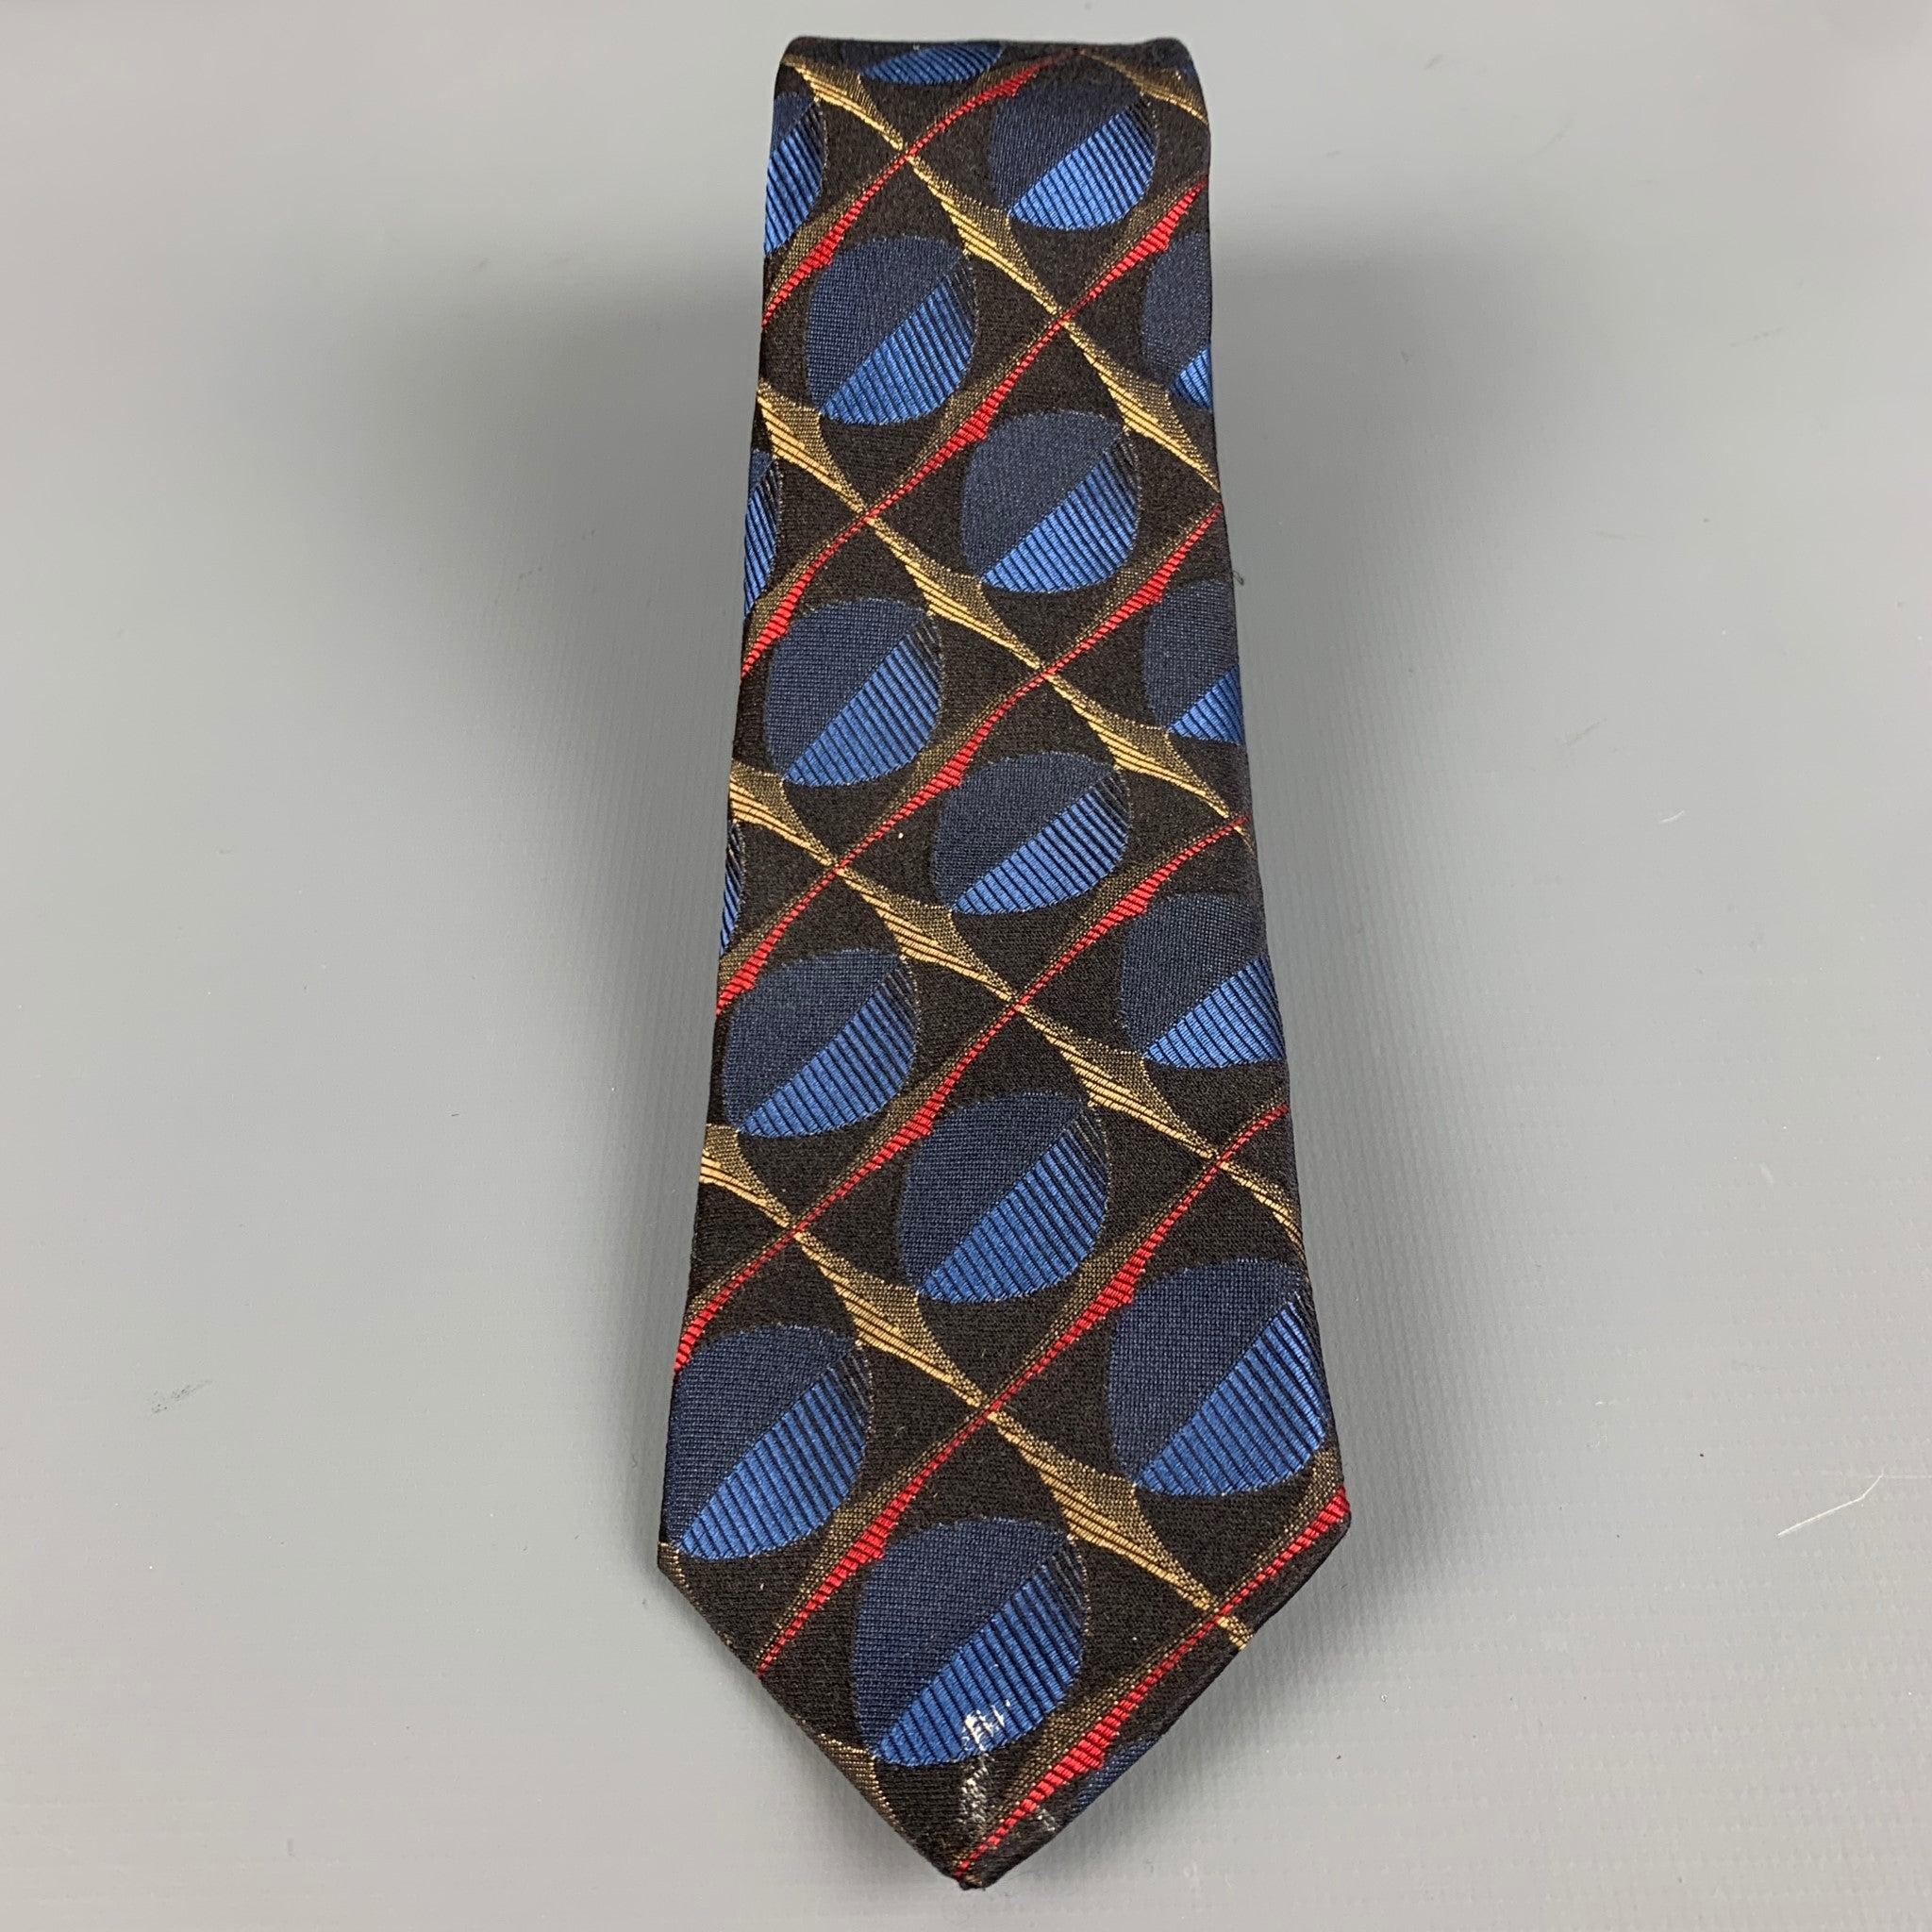 PRADA
Krawatte aus schwarzem Seidenstoff mit mehrfarbigem abstraktem Jacquard-Muster und schmaler Passform. Hergestellt in Italien, guter gebrauchter Zustand. Mäßige Gebrauchsspuren, so wie sie sind. 

Abmessungen: 
  Breite: 2,5 Zoll Länge: 61 Zoll